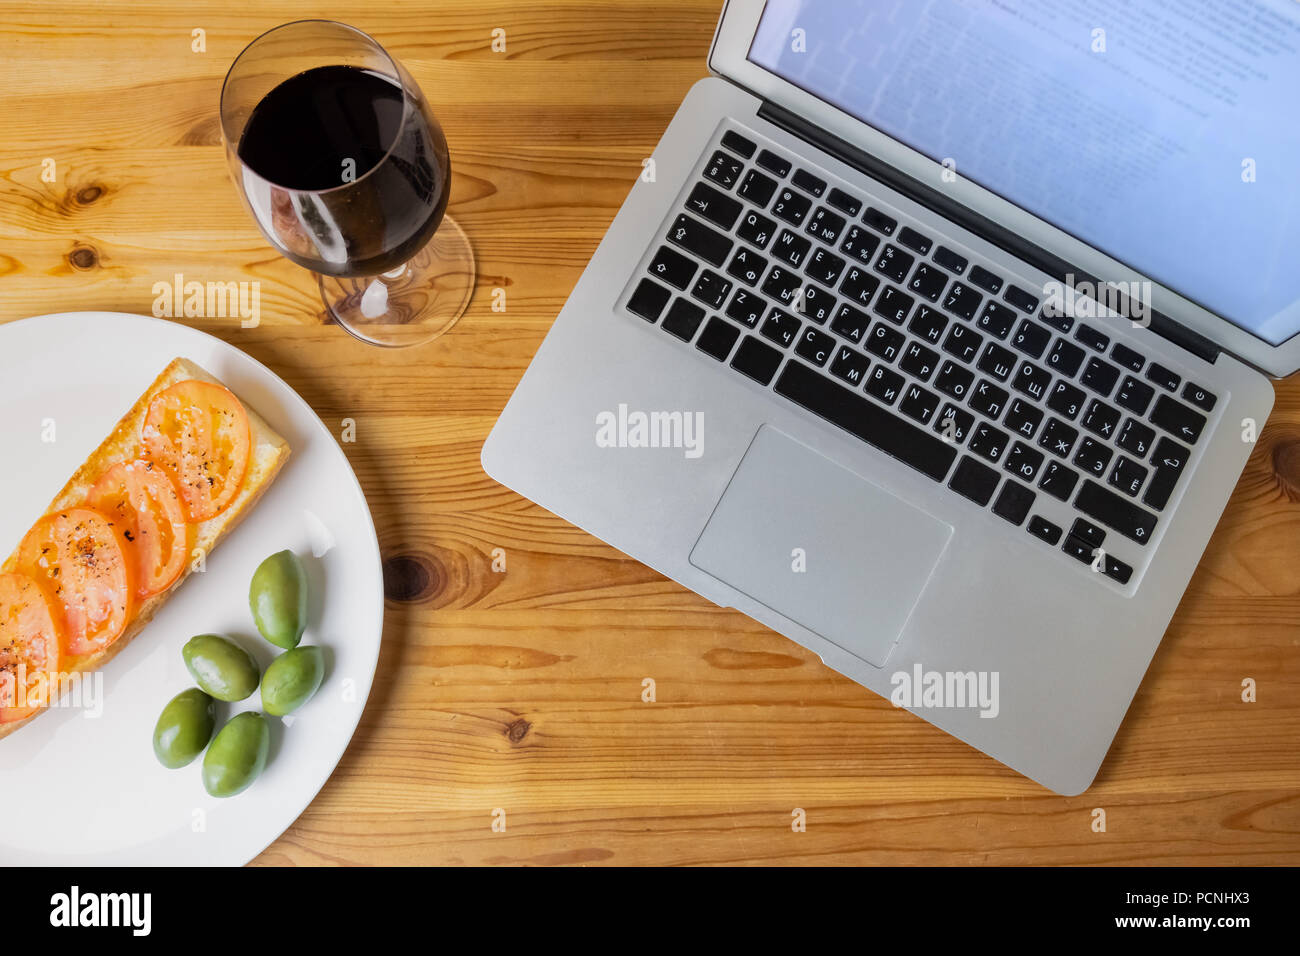 Blick von oben auf die Laptop und Licht am Abend Brot, Oliven und Wein. Flach Konzept der Abendessen und Laptop Kombination von natürlichen Holz Hintergrund Stockfoto